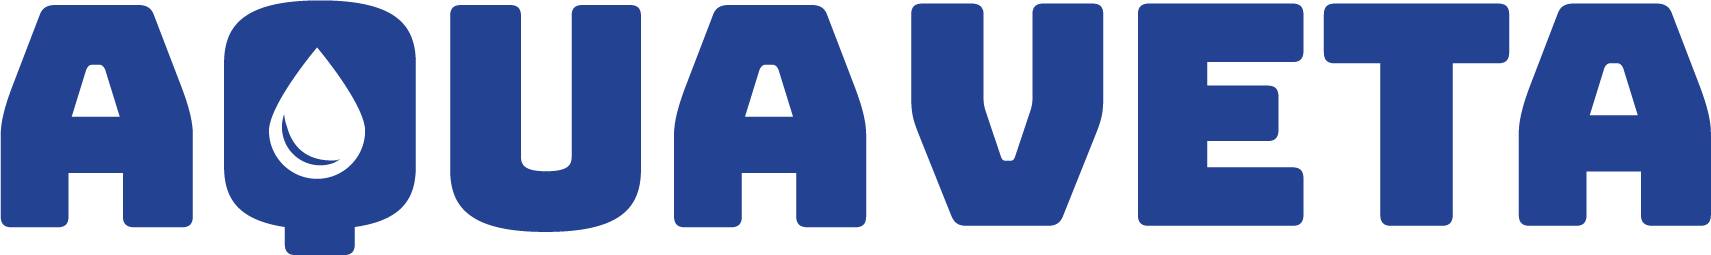 AV-logo1-blue